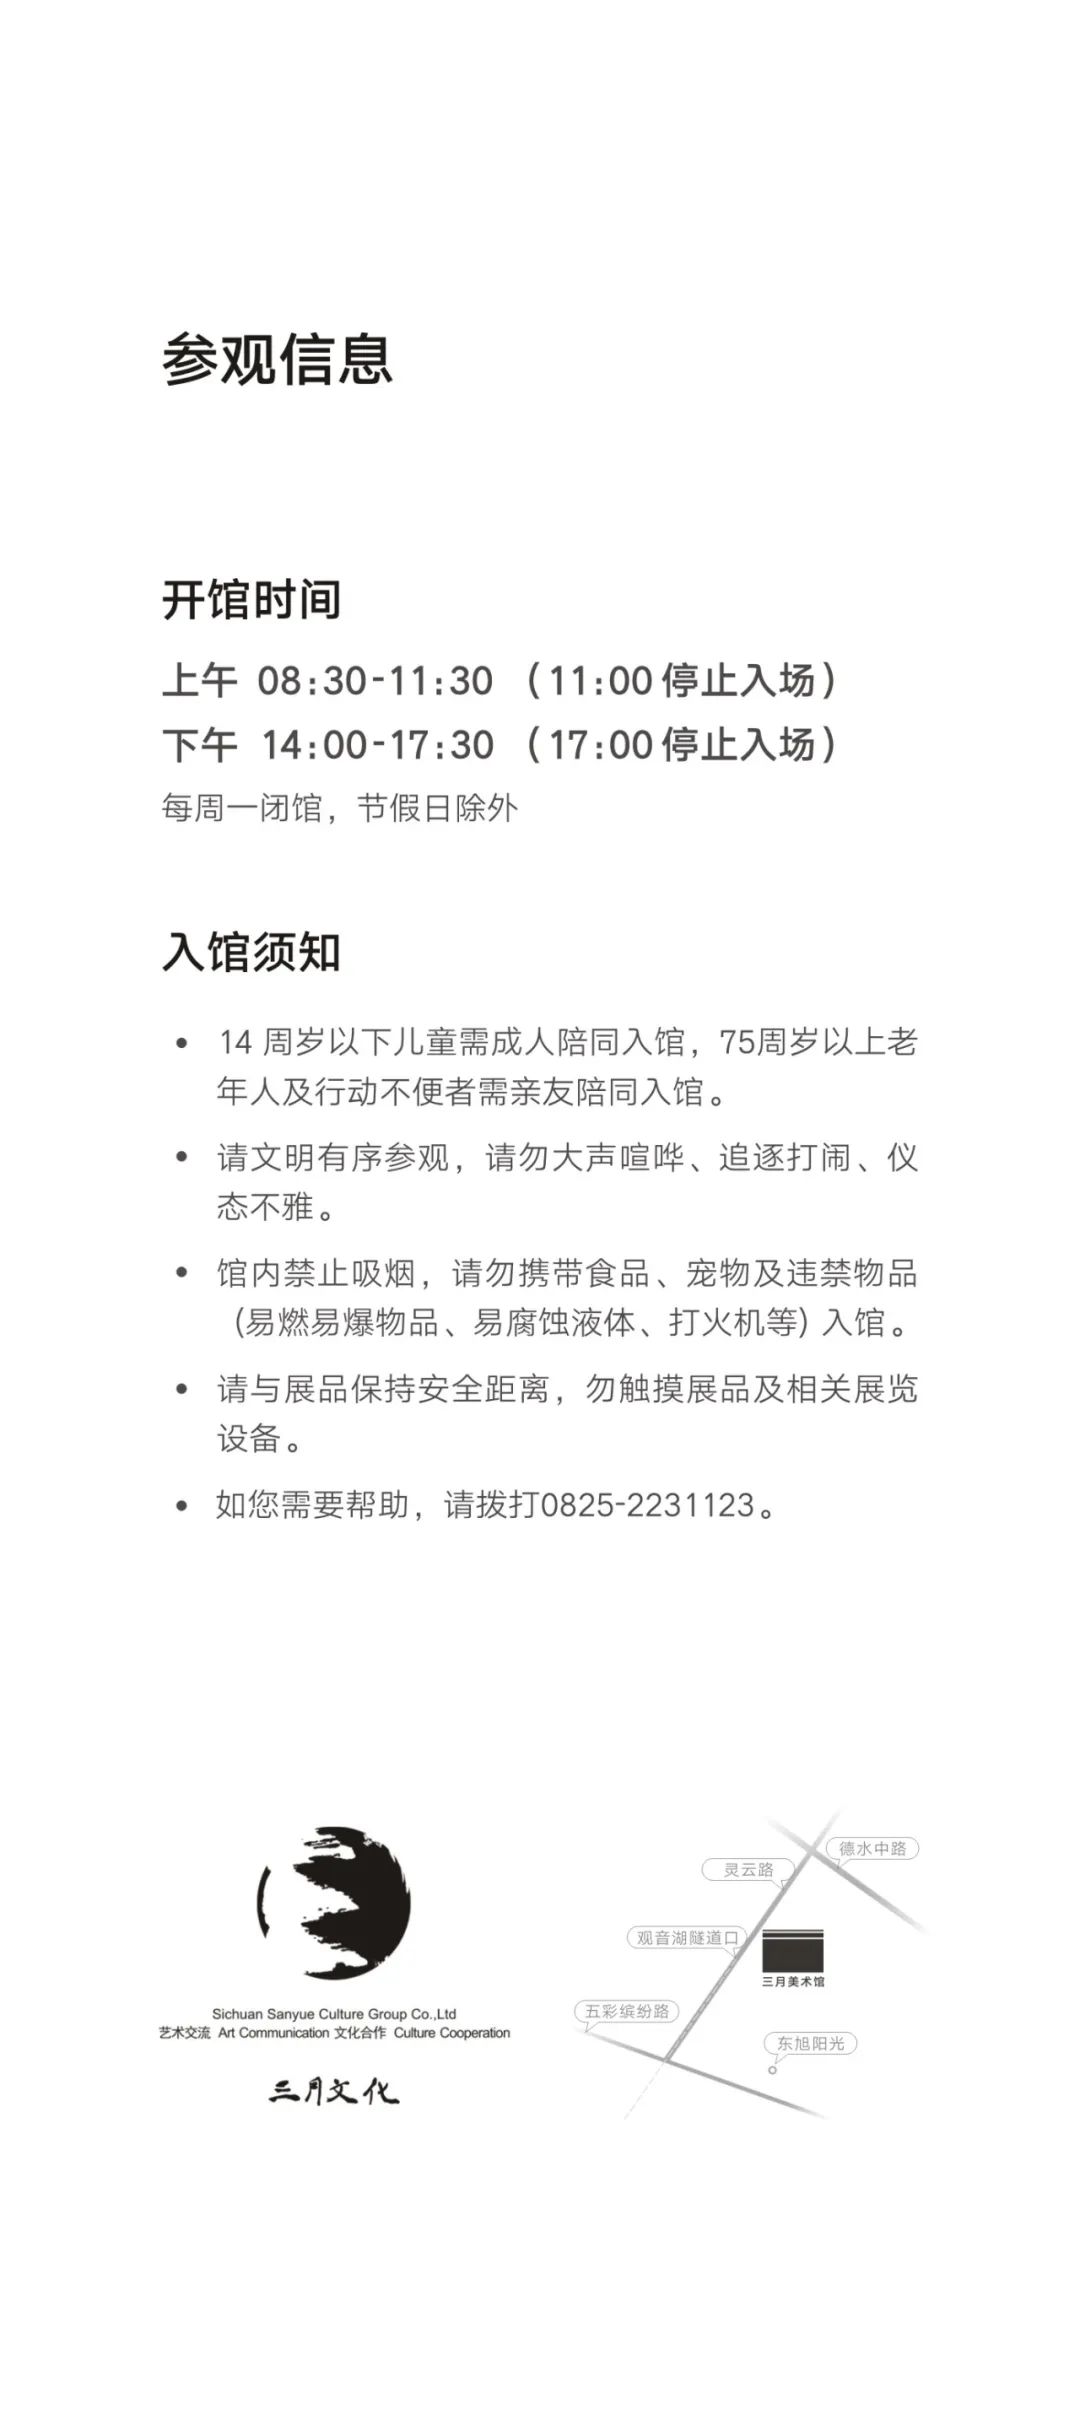 书法、篆刻两大展览将于4月15日开幕，姜宝林、申万胜、王鲁湘等书画大家齐聚遂宁